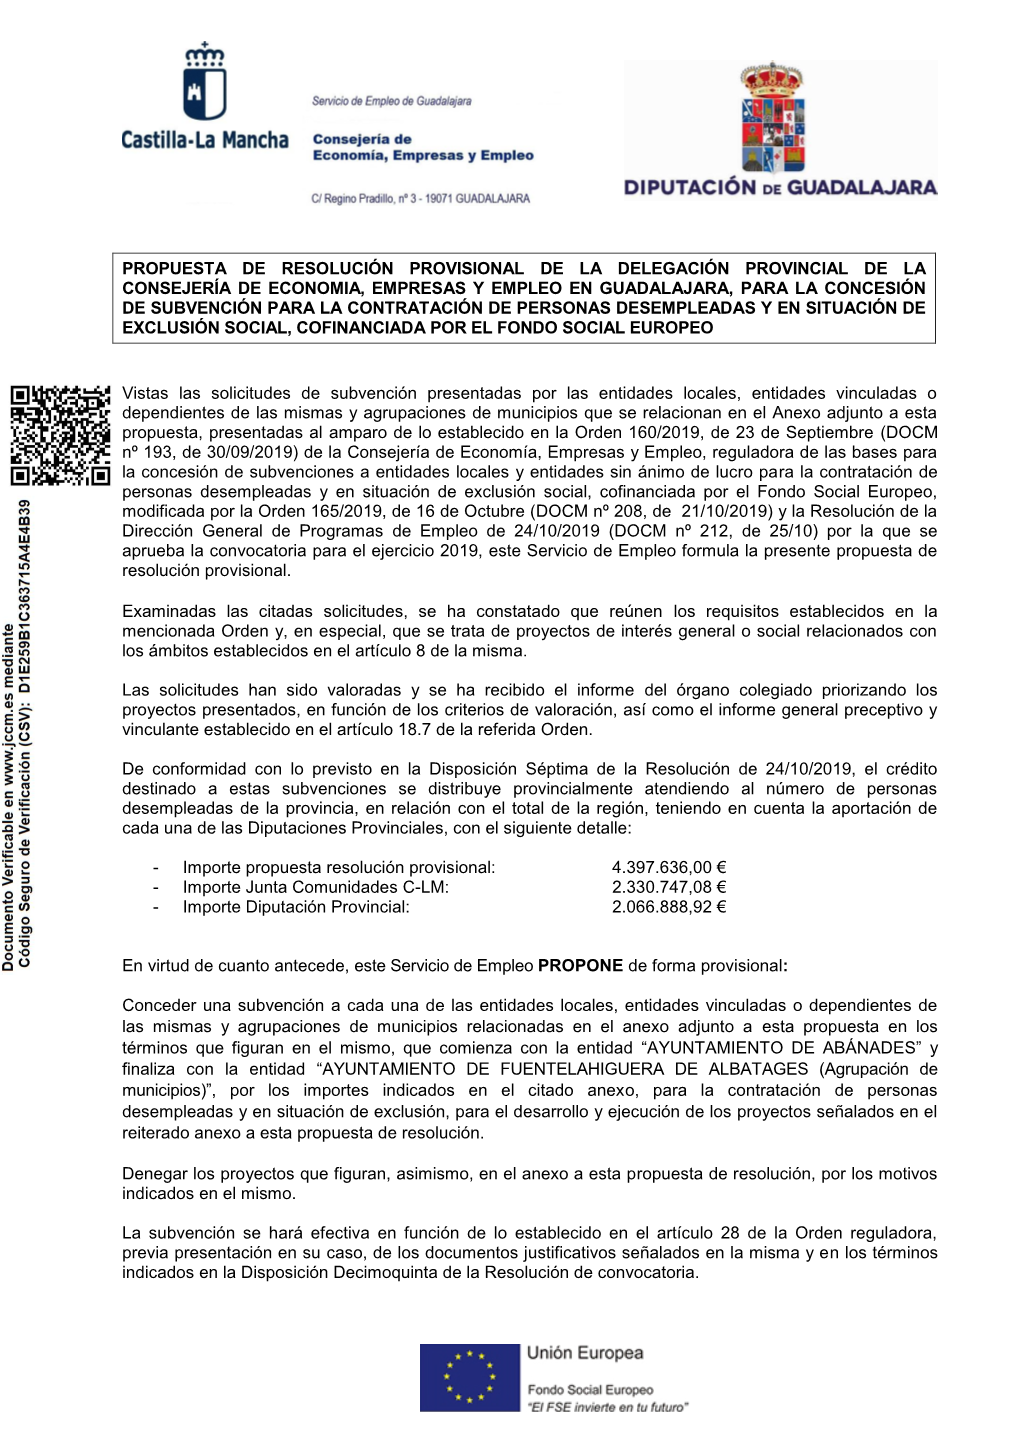 Propuesta De Resolución Provisional Guadalajara